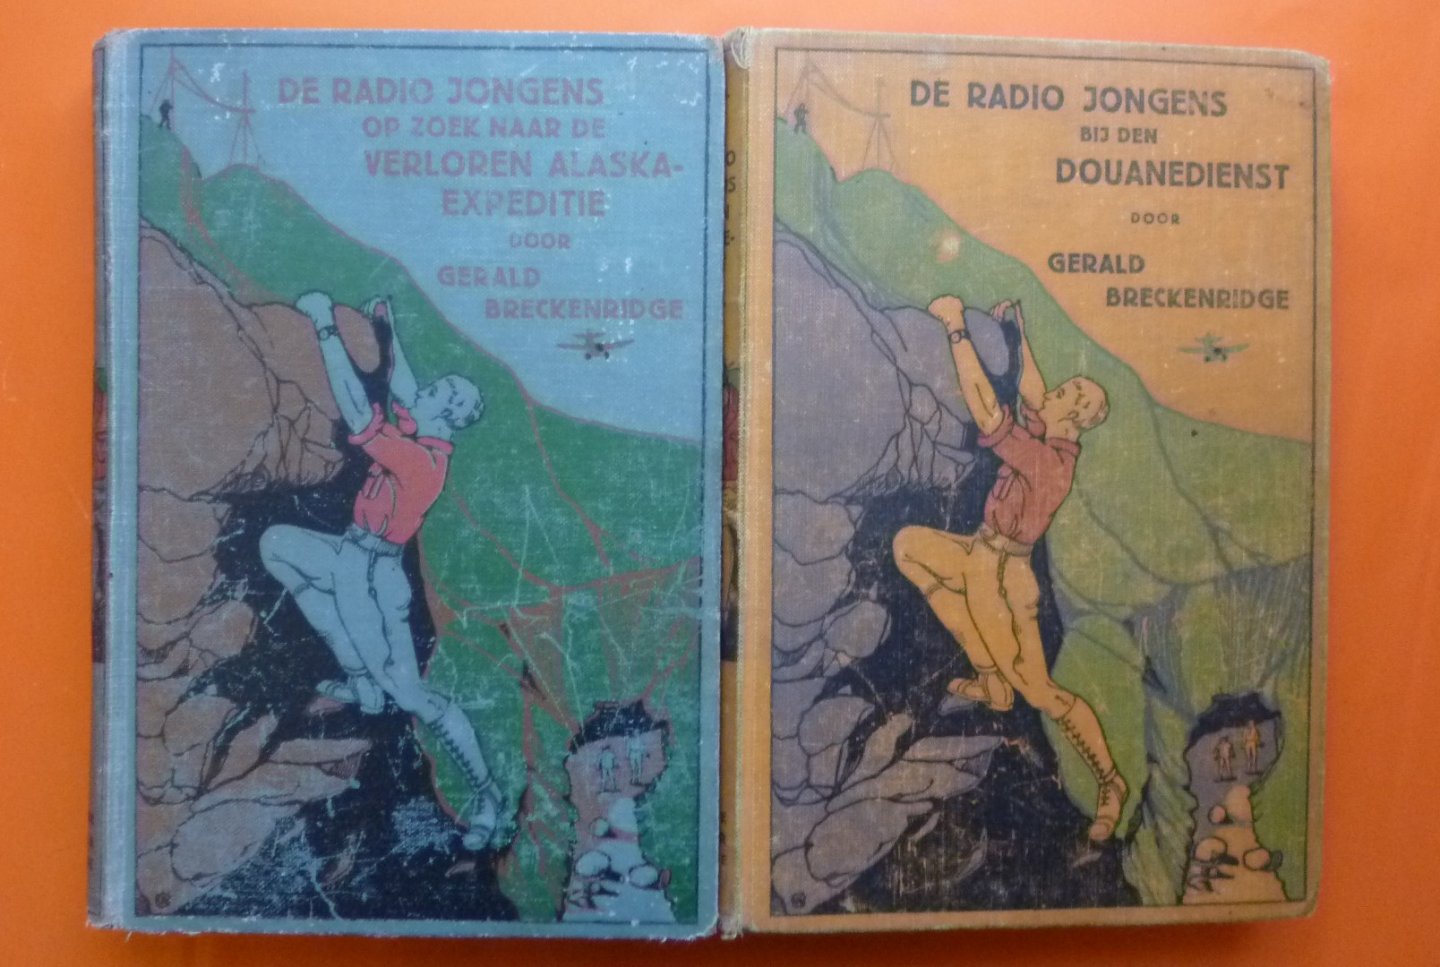 Breckenbridge Gerald - De Radiojongens op zoek naar de verloren Alaskaexpeditie+ De Radiojongens bij den Douanedienst